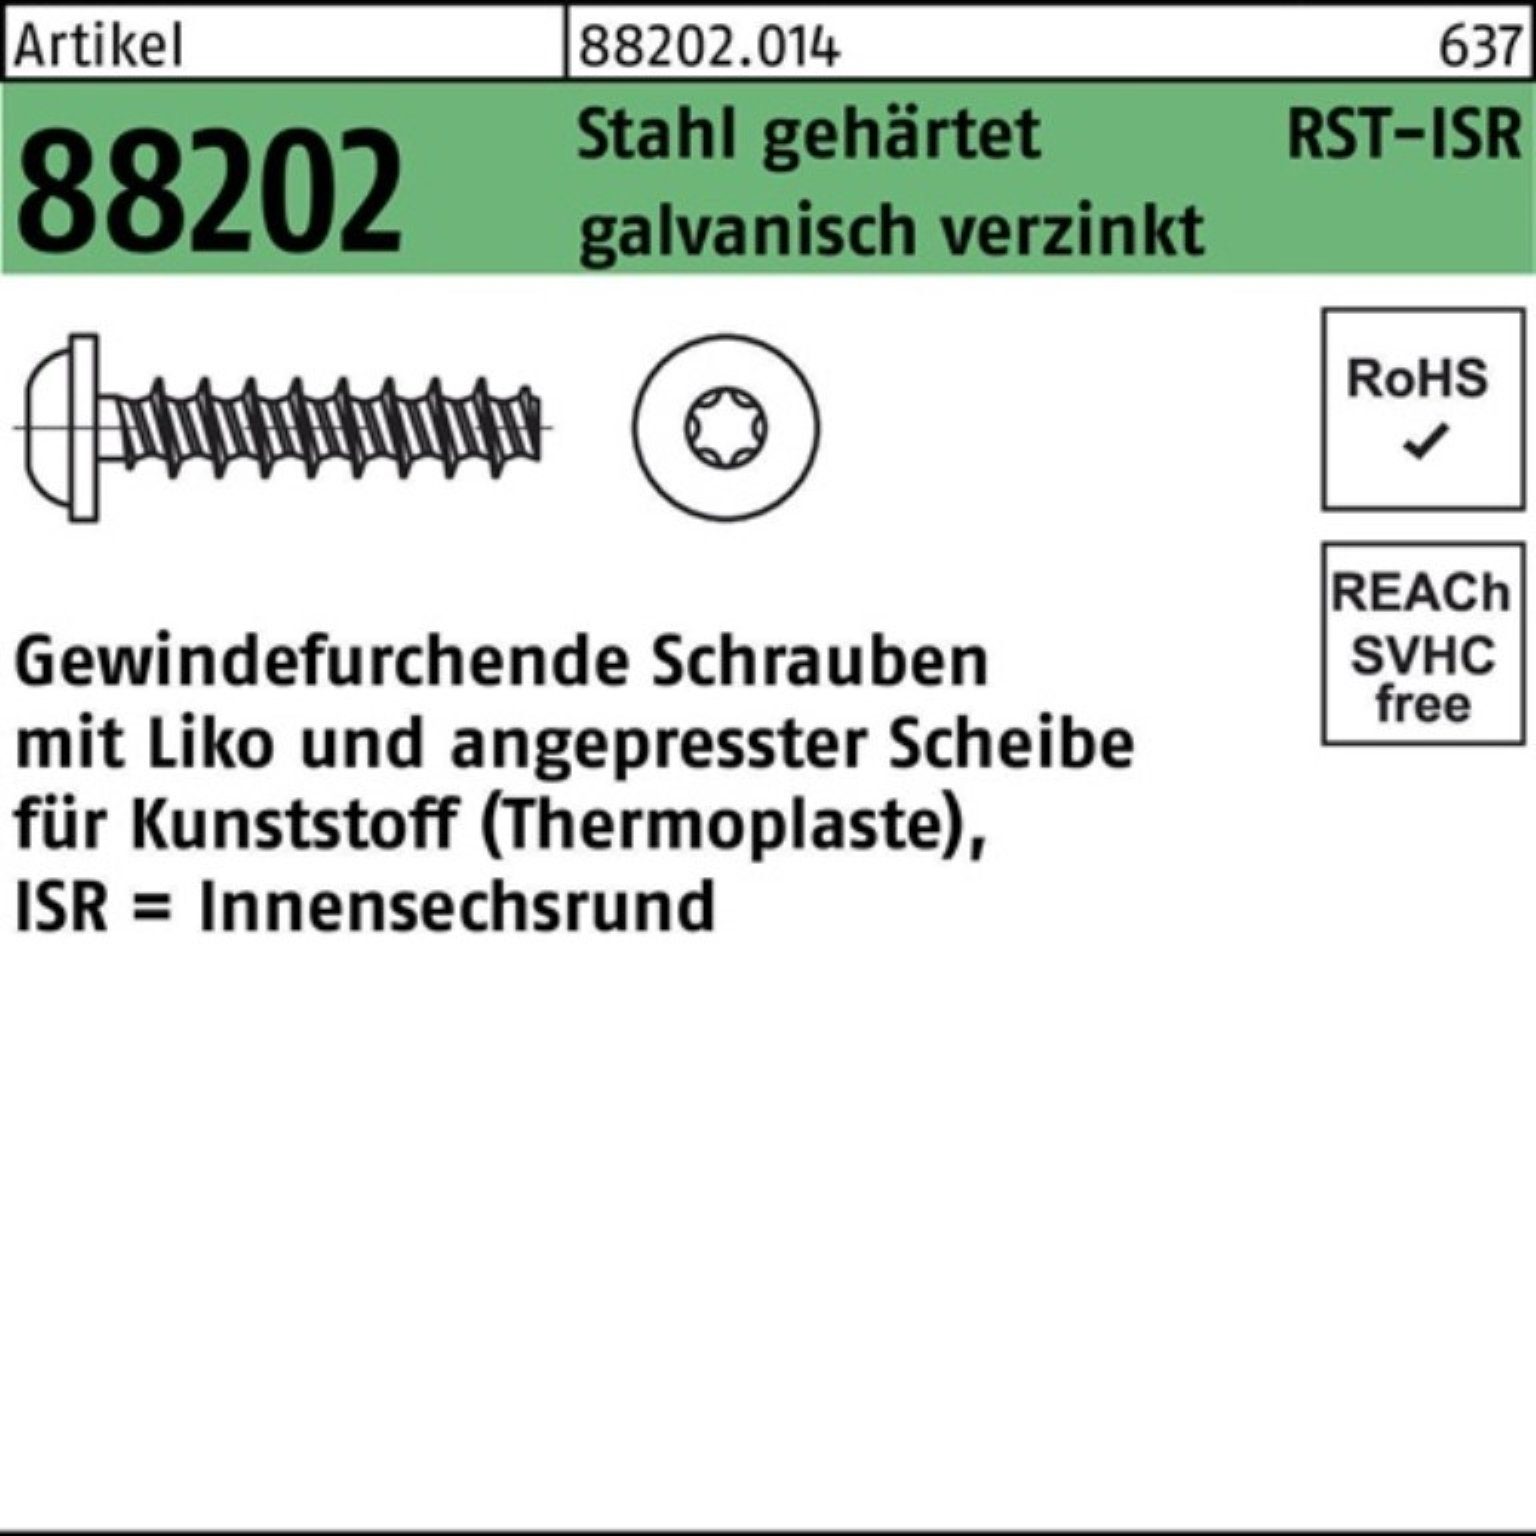 Reyher Gewindeschraube 1000er Pack Liko Stahl Gewindefurchendeschraube 88202 2,5x10-T6 R ISR